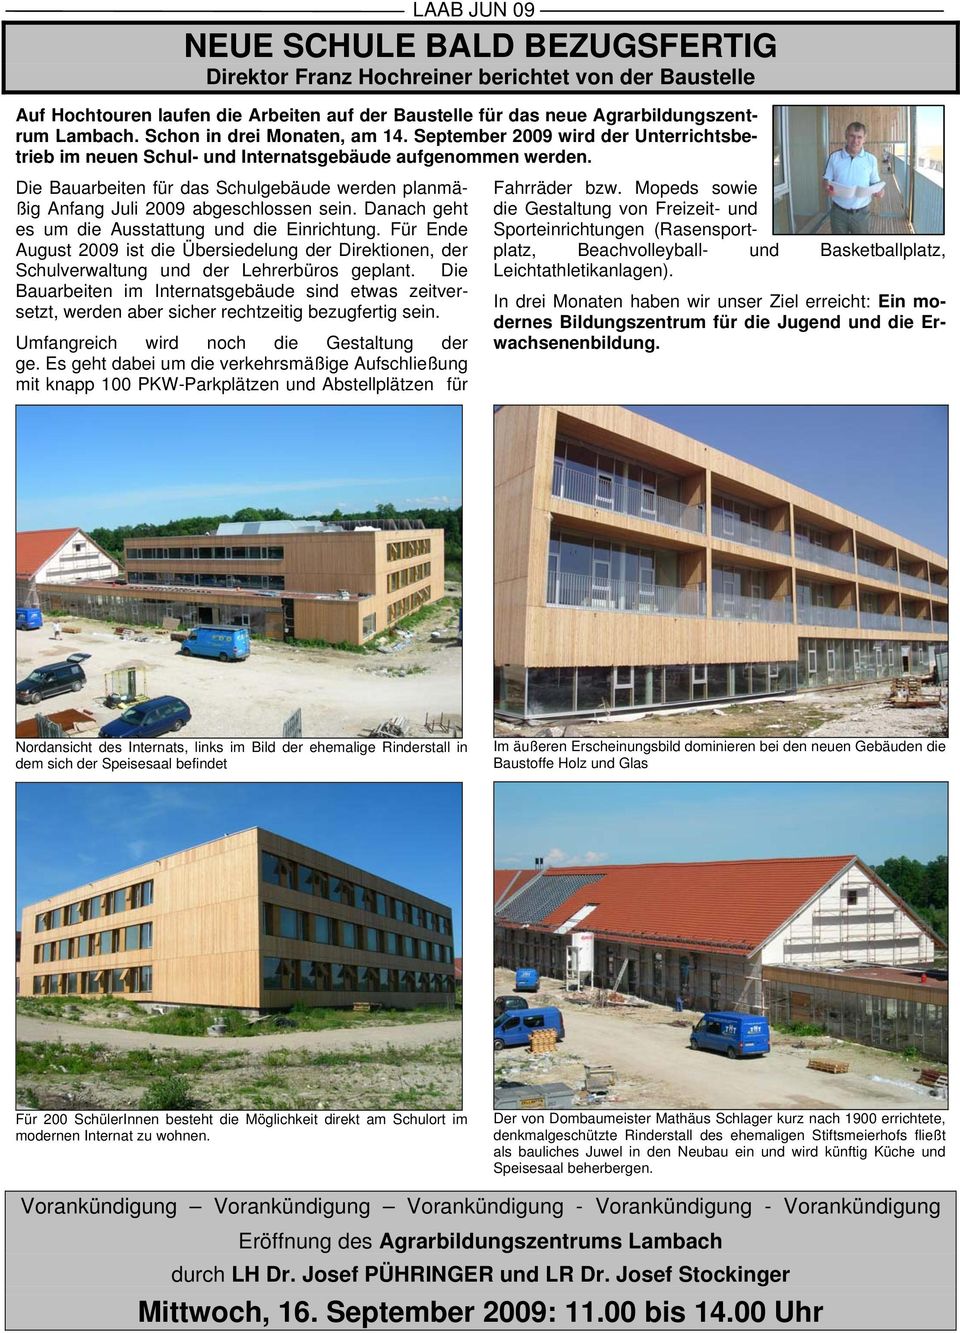 Die Bauarbeiten für das Schulgebäude werden planmäßig Anfang Juli 2009 abgeschlossen sein. Danach geht es um die Ausstattung und die Einrichtung.